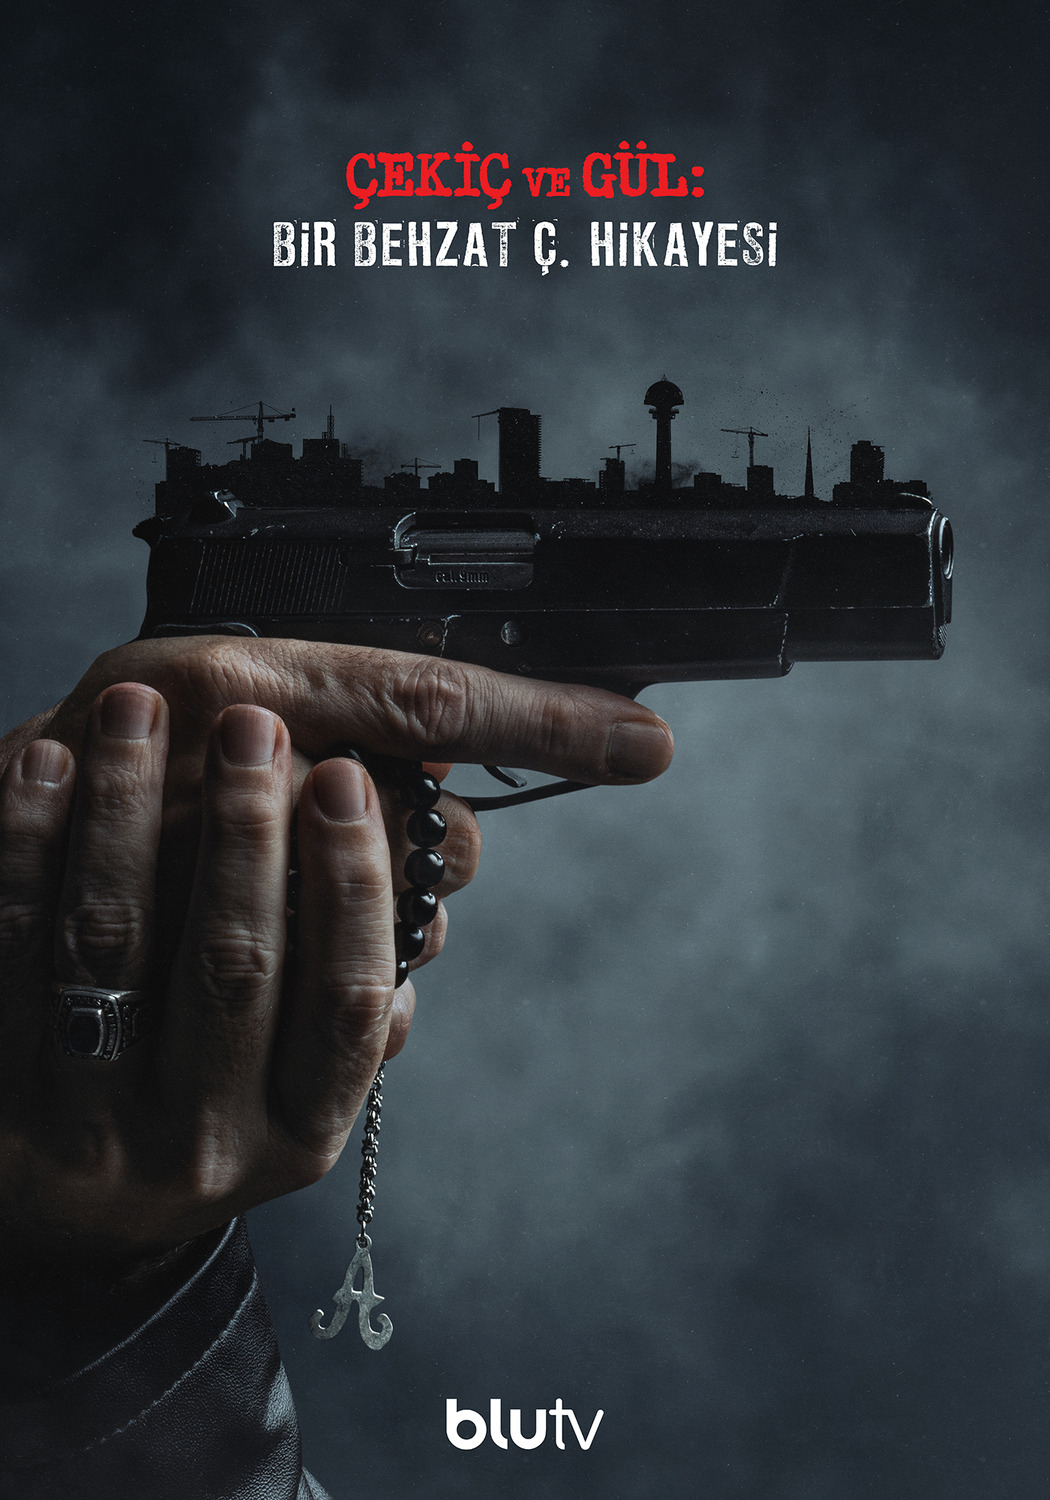 Extra Large TV Poster Image for Çekiç ve Gül: Bir Behzat Ç. Hikayesi (#4 of 9)